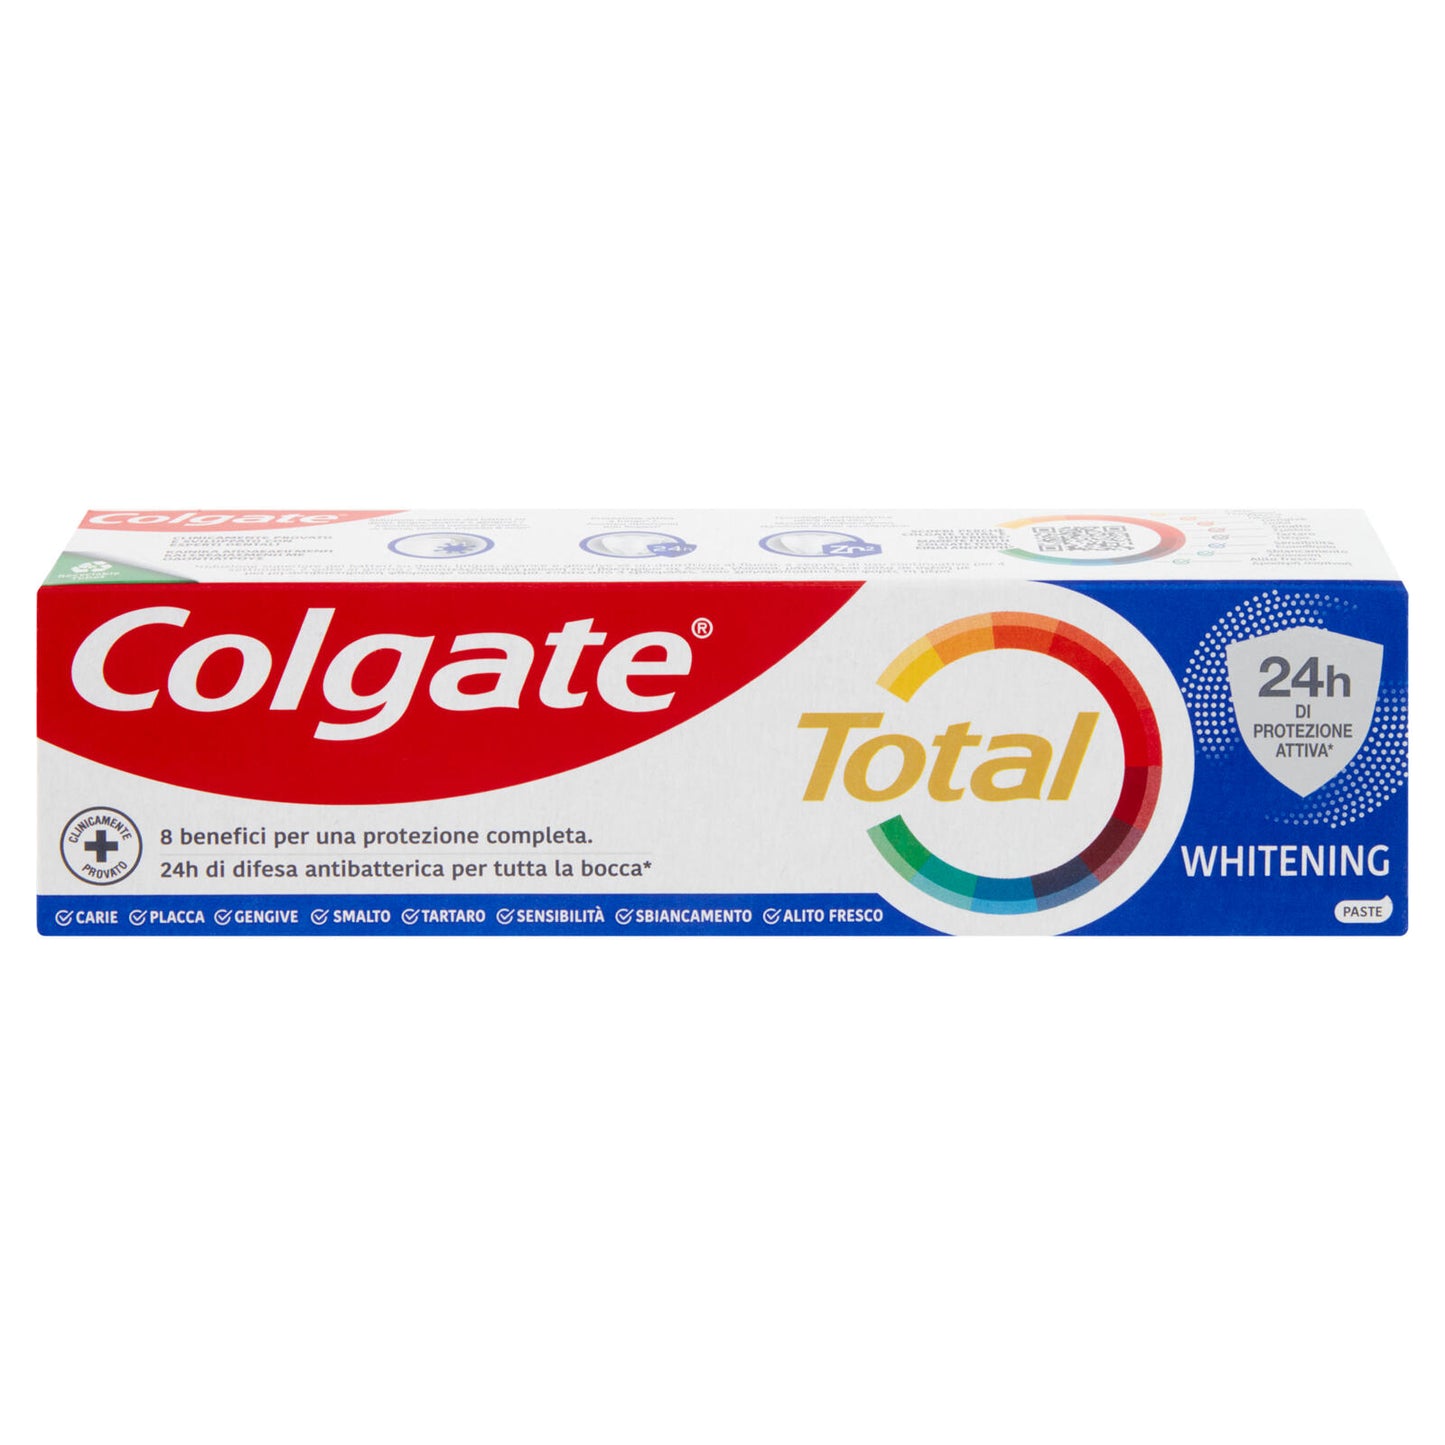 Colgate dentifricio sbiancante Total Whitening 24h di protezione attiva 75 ml